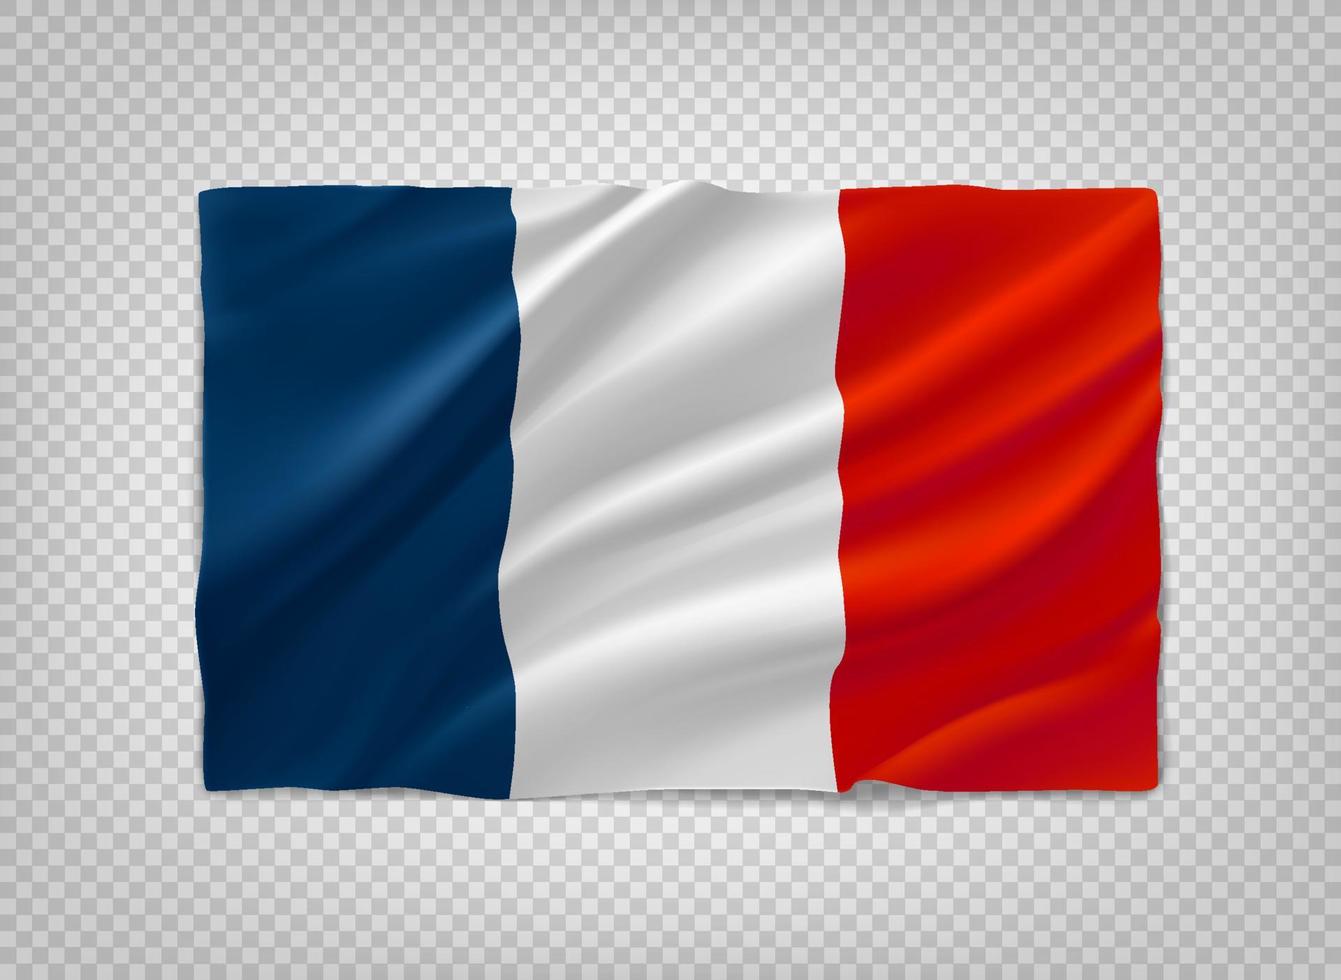 bandeira da França. objeto de vetor 3D isolado em fundo transparente